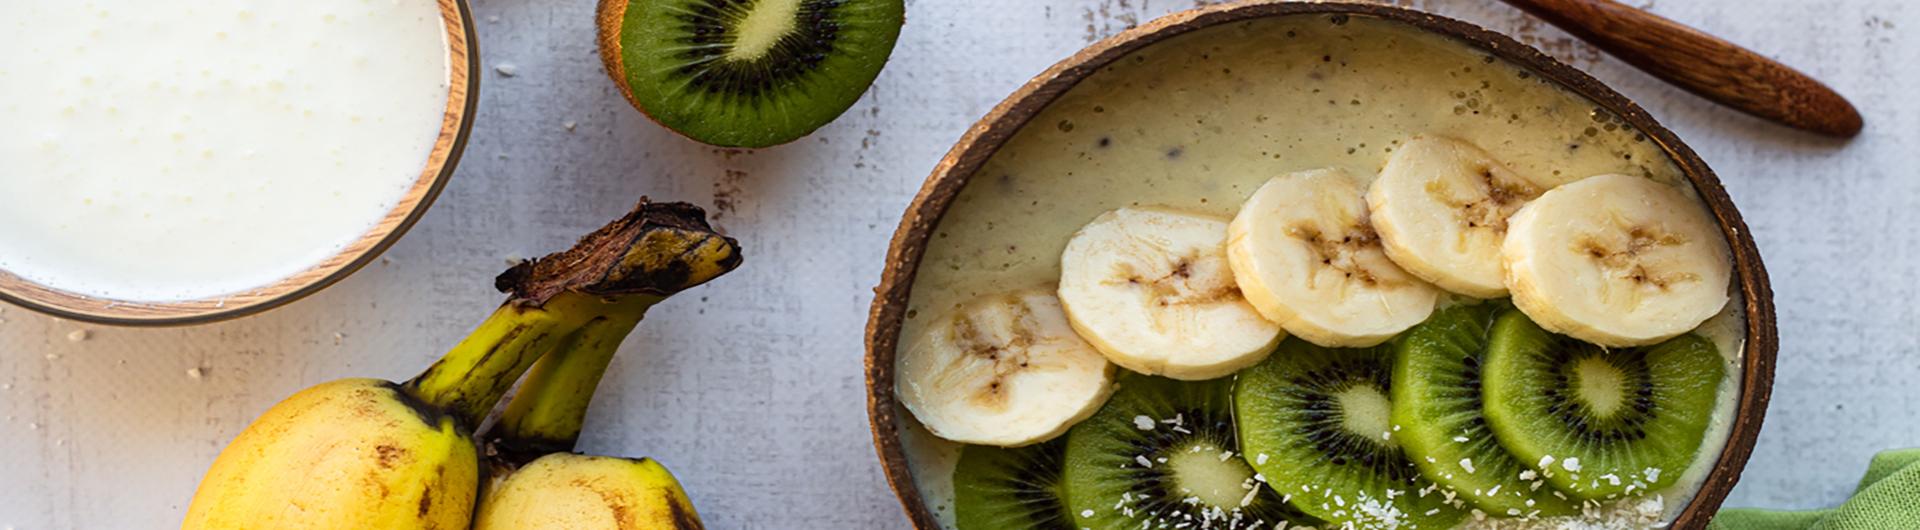 Smoothie bowl banane kiwi au Lait Ribot